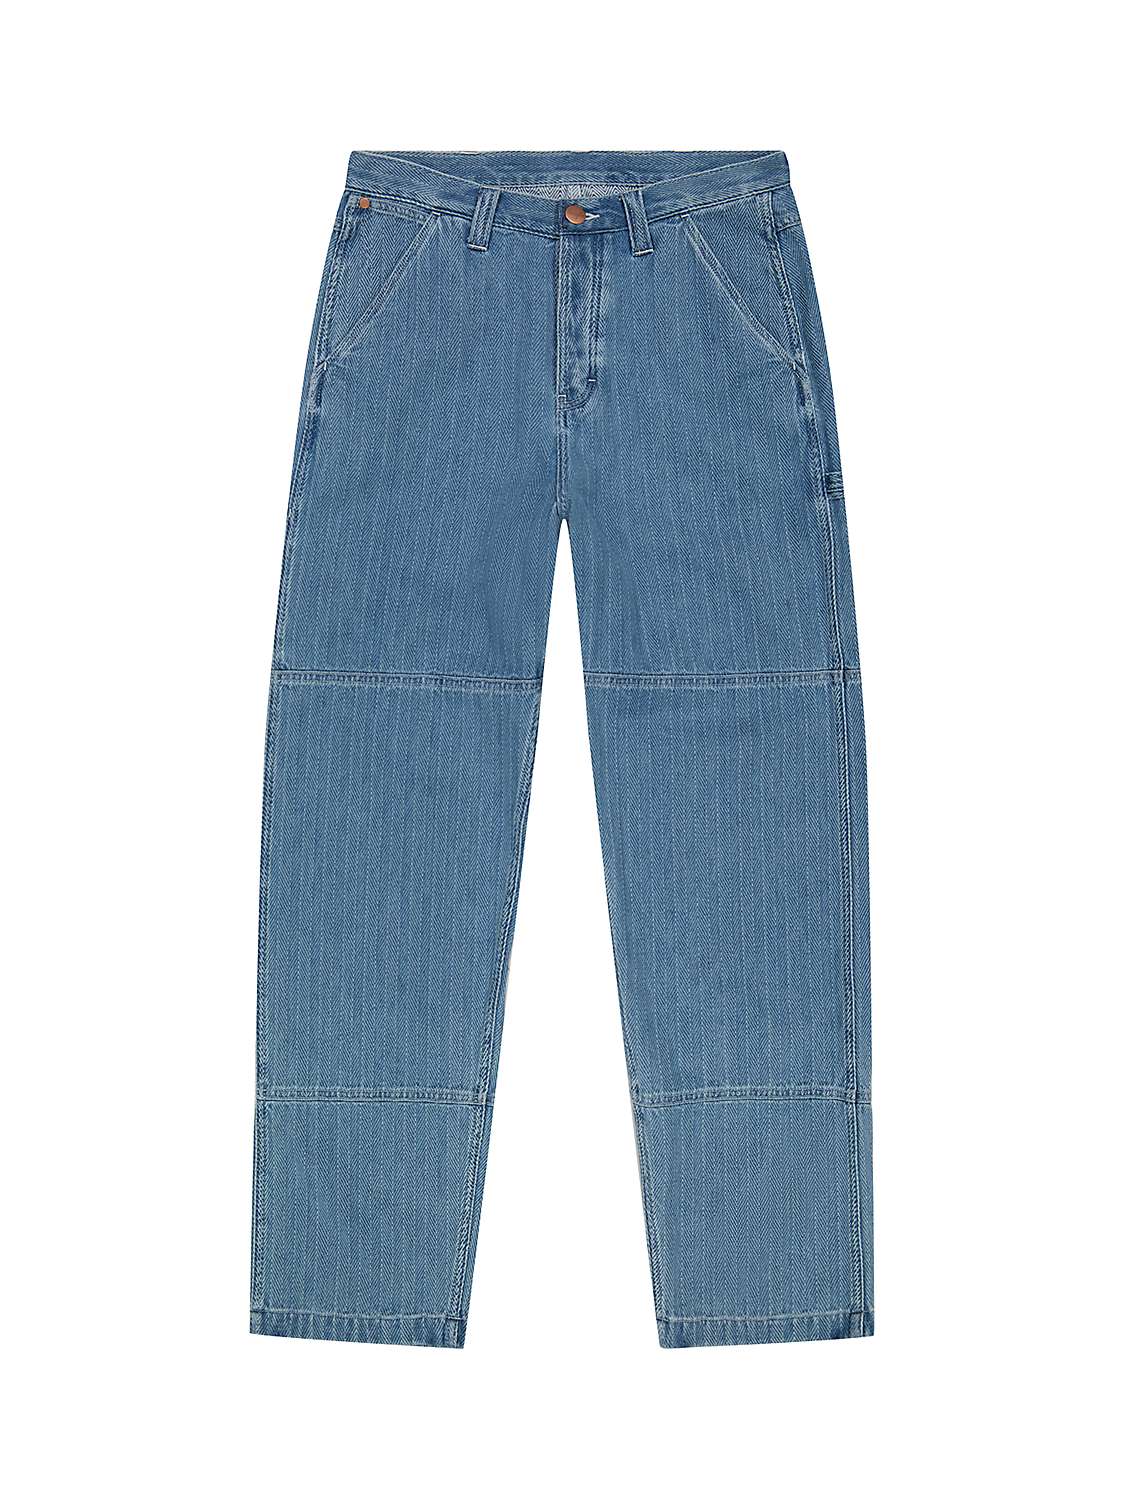 Buy Wrangler Casey Carpenter Straight Leg Jeans, Med Indigo Online at johnlewis.com